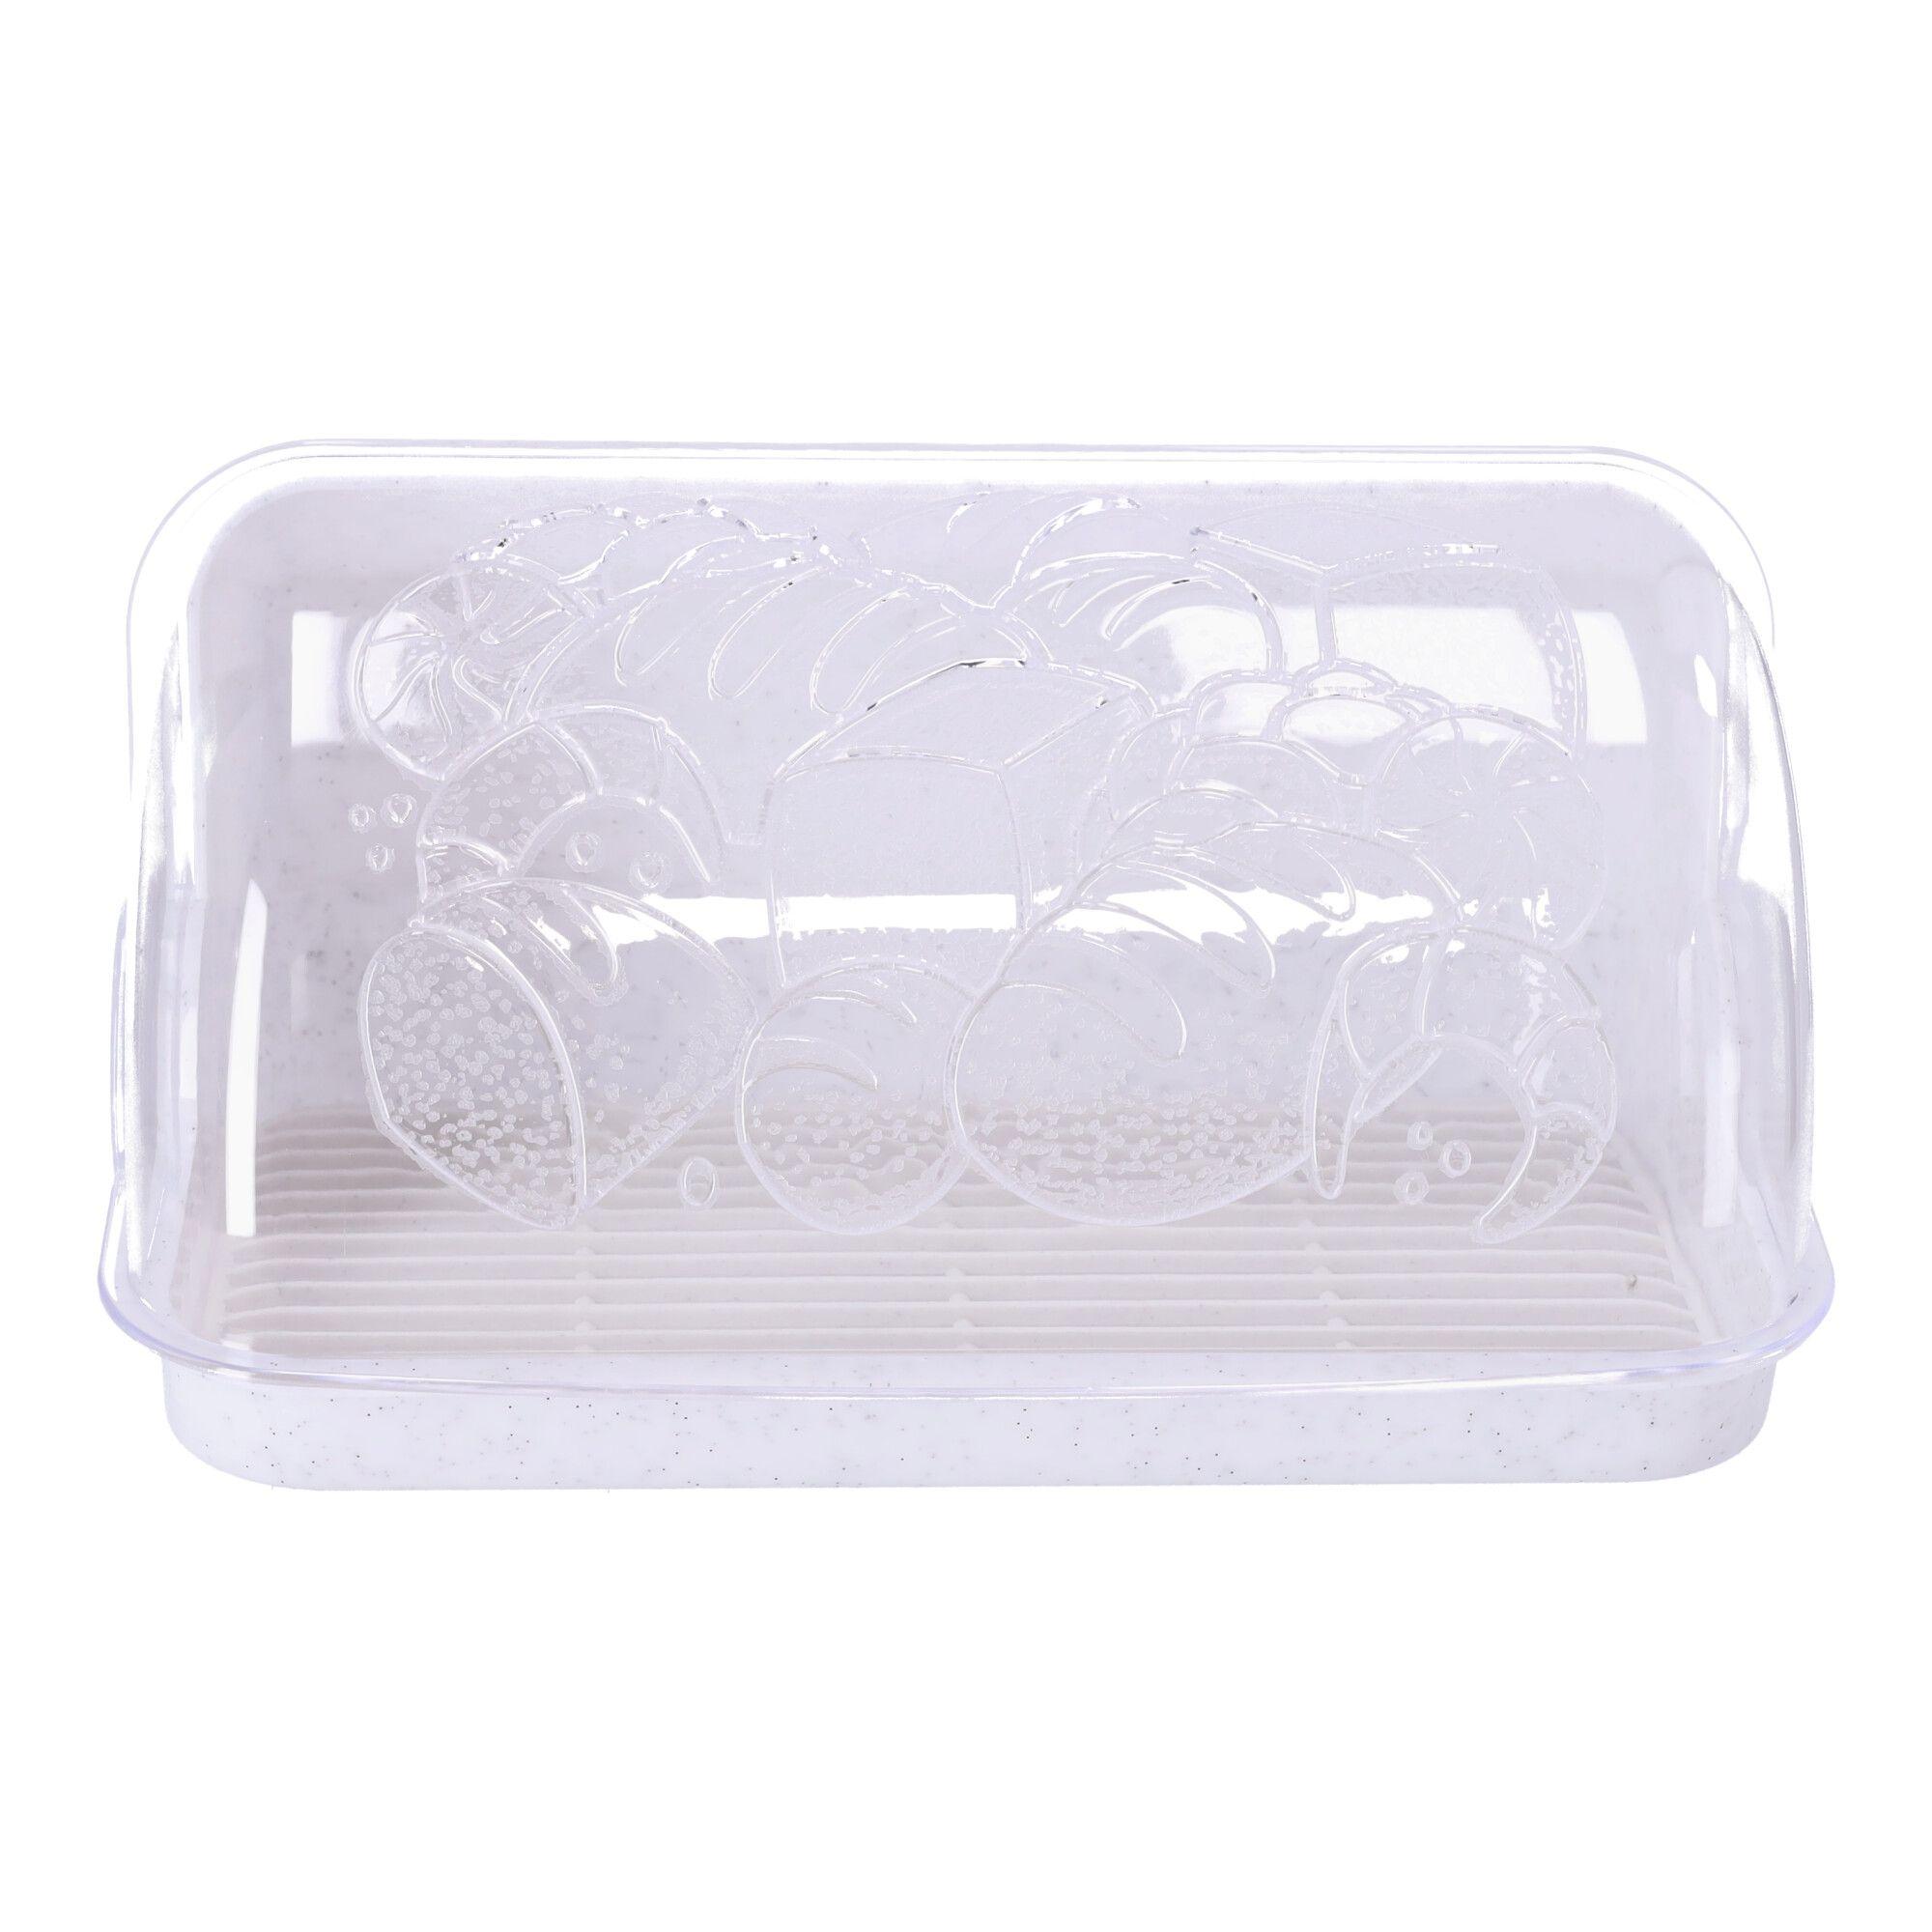 Plastic bread box, bread container, size 33x25x17 cm, POLISH PRODUCT